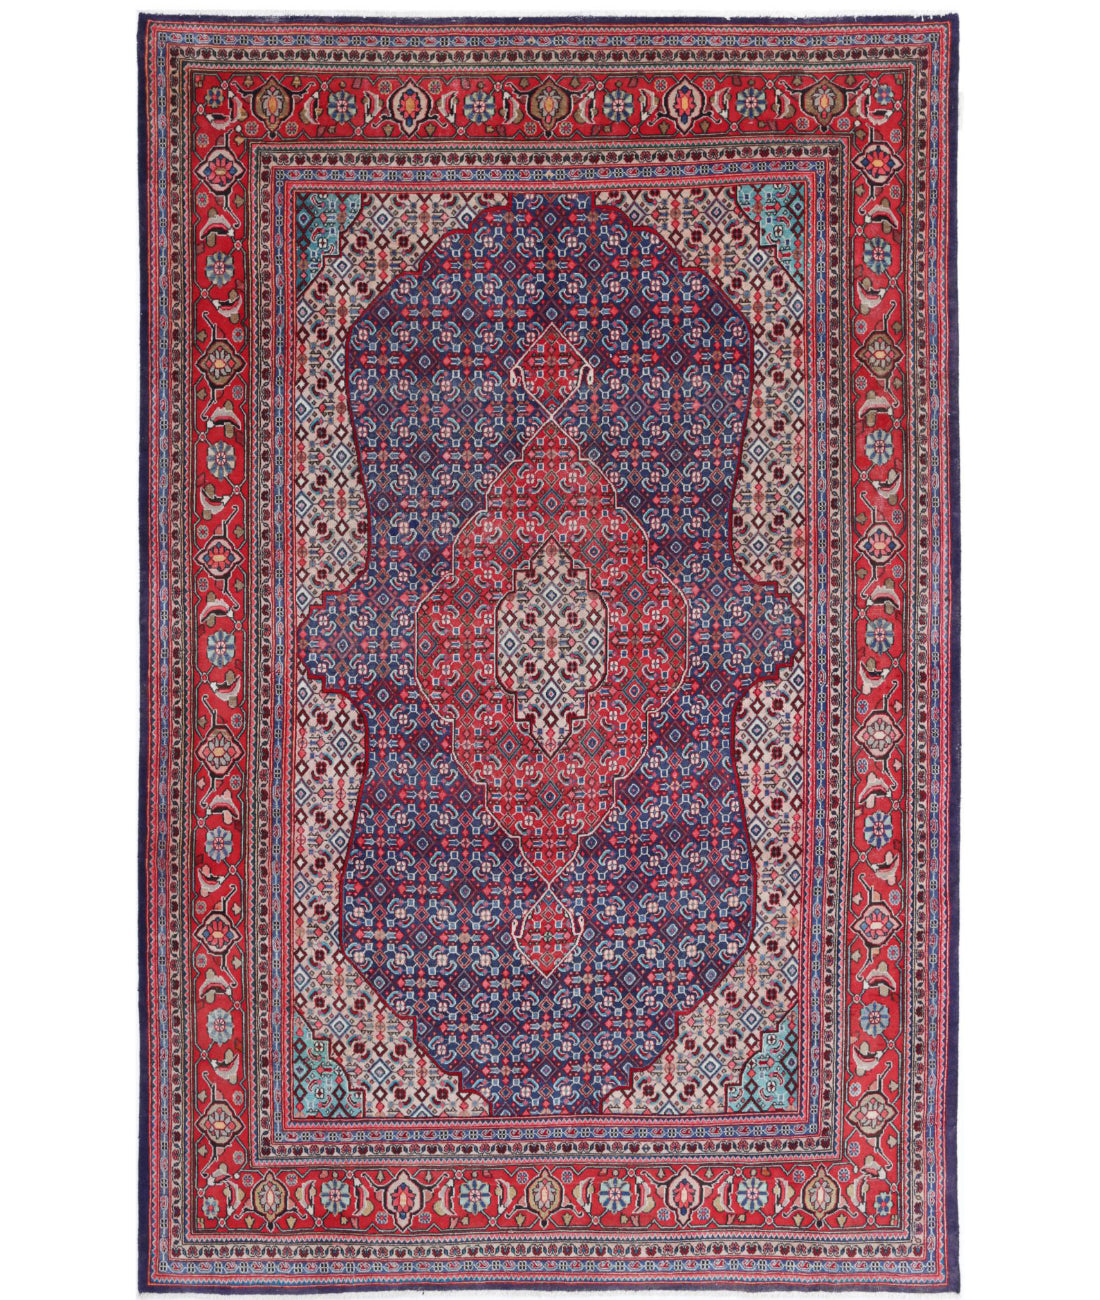 Hand Knotted Persian Bijar Wool Rug - 6&#39;7&#39;&#39; x 10&#39;7&#39;&#39; 6&#39;7&#39;&#39; x 10&#39;7&#39;&#39; (198 X 318) / Blue / Red